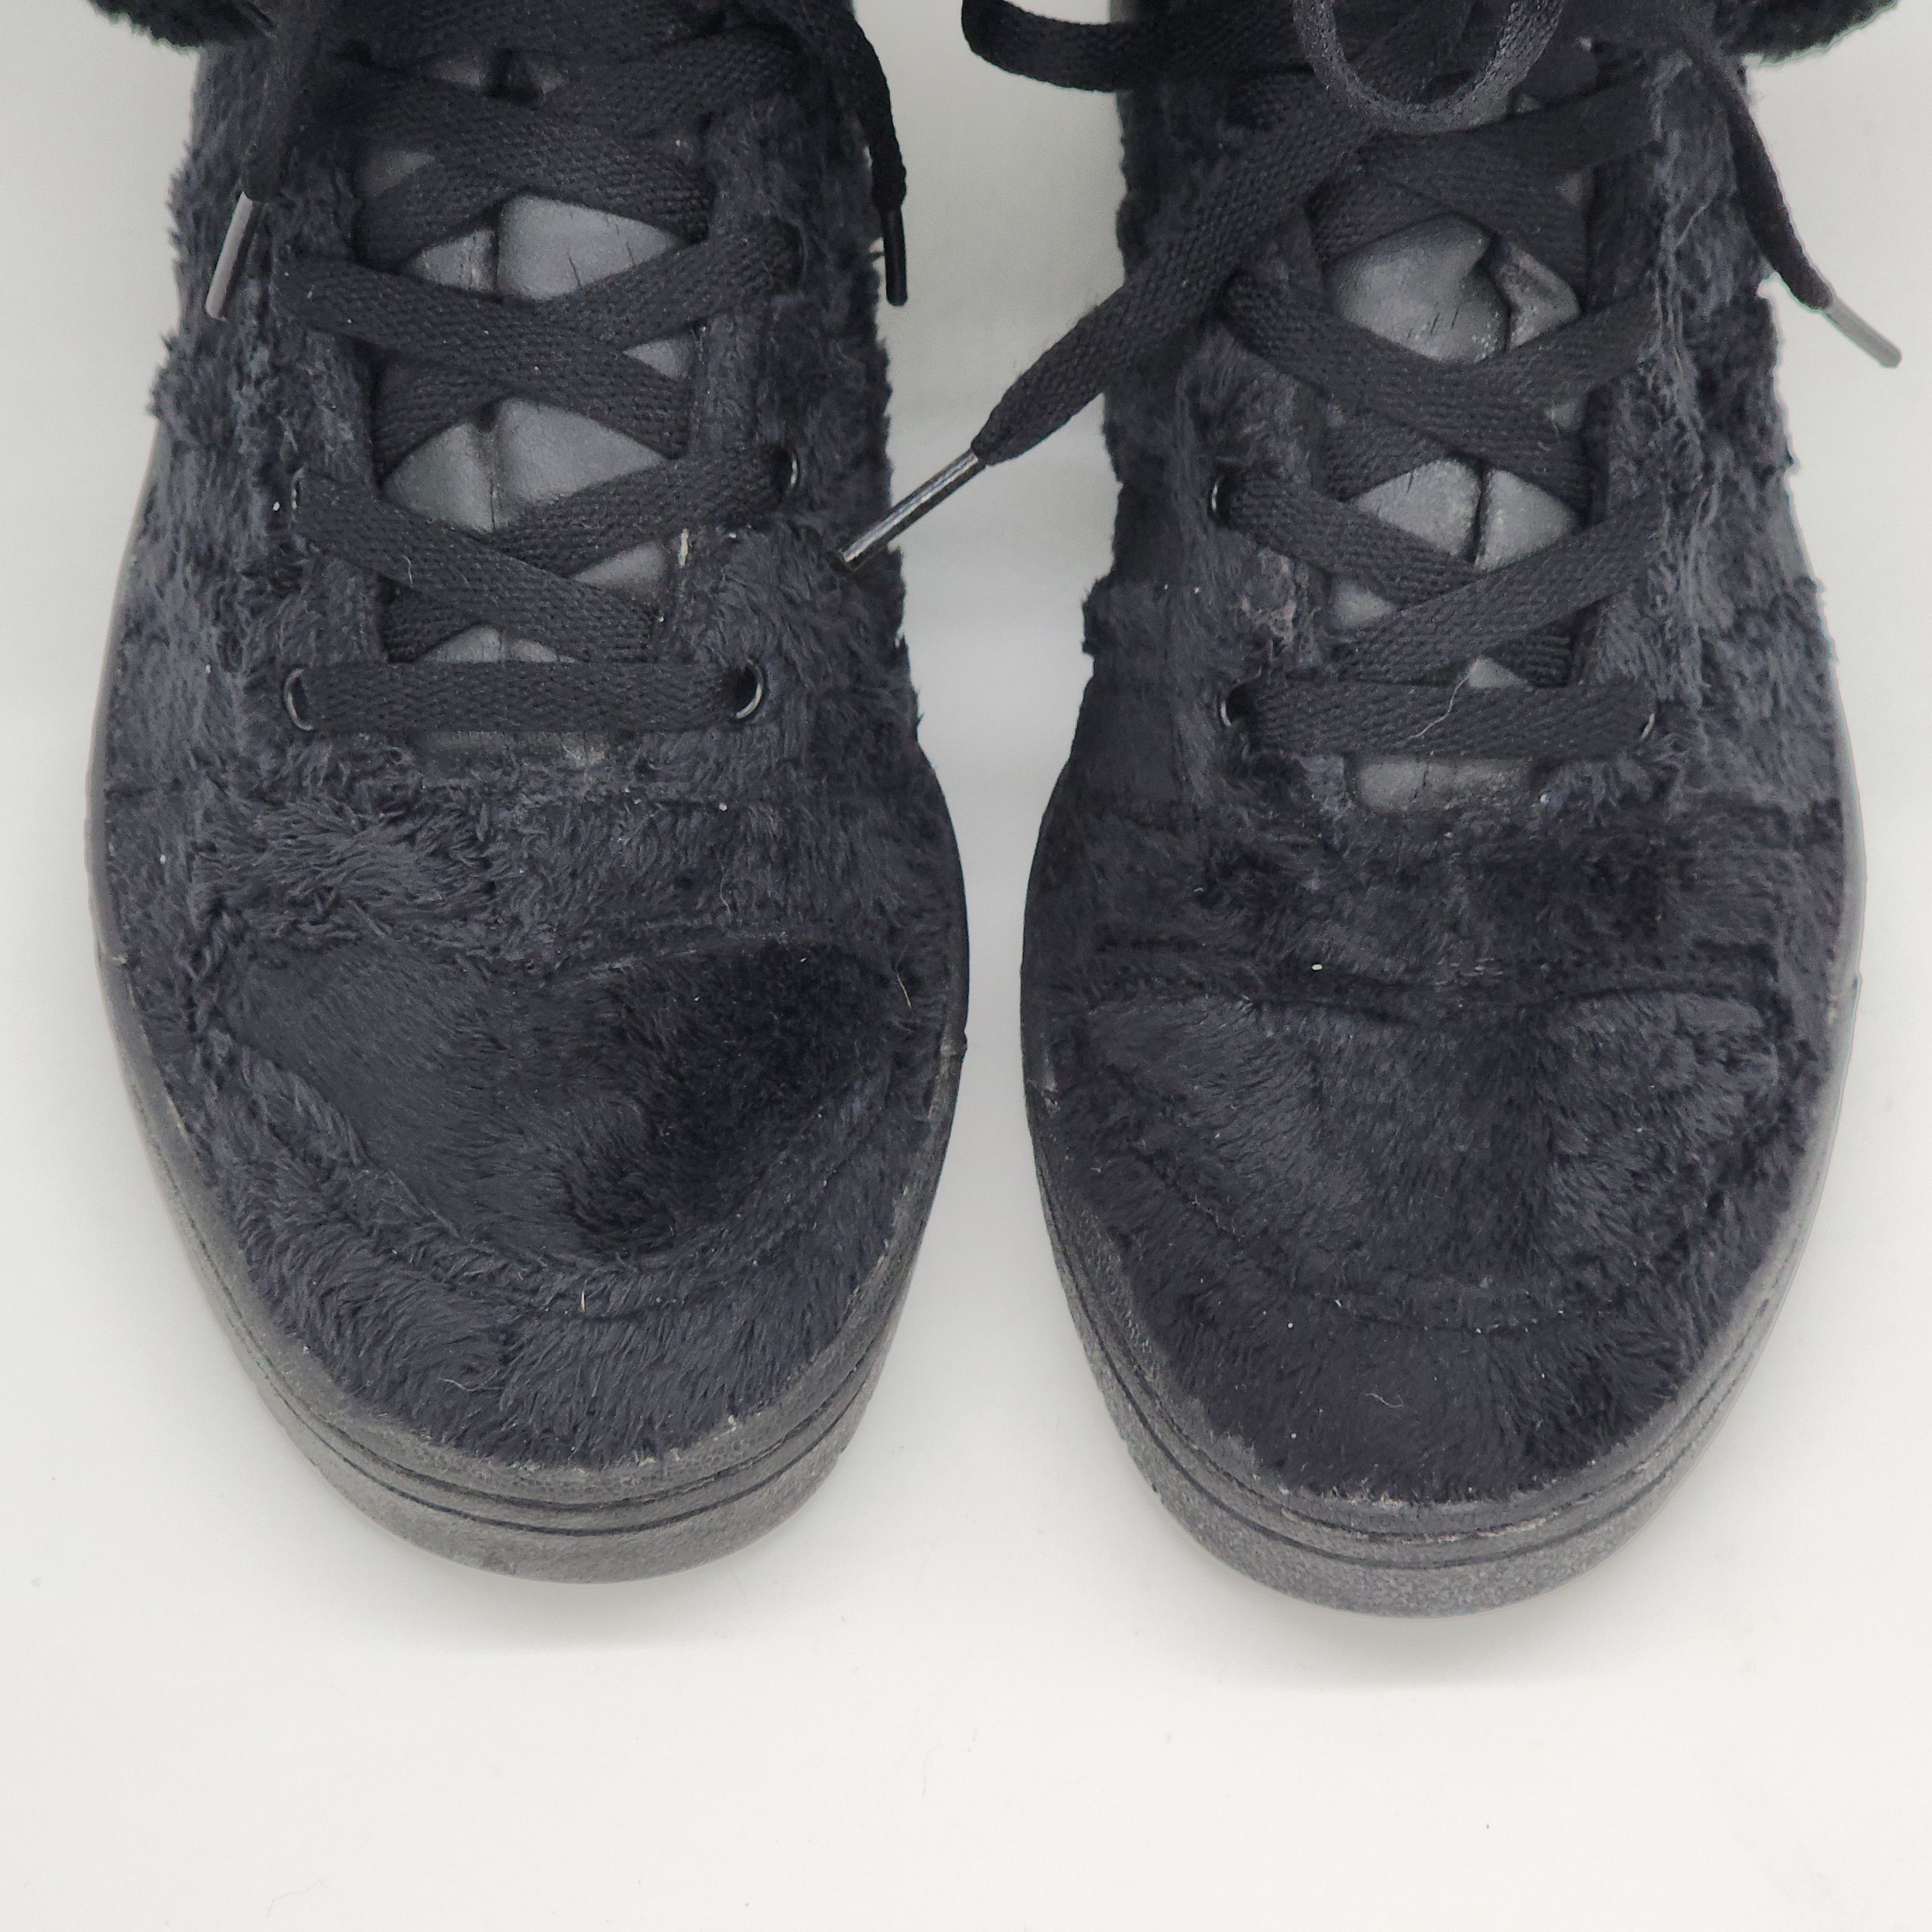 Adidas x Jeremy Scott - Gorilla Sneakers "2 Chainz" - 5